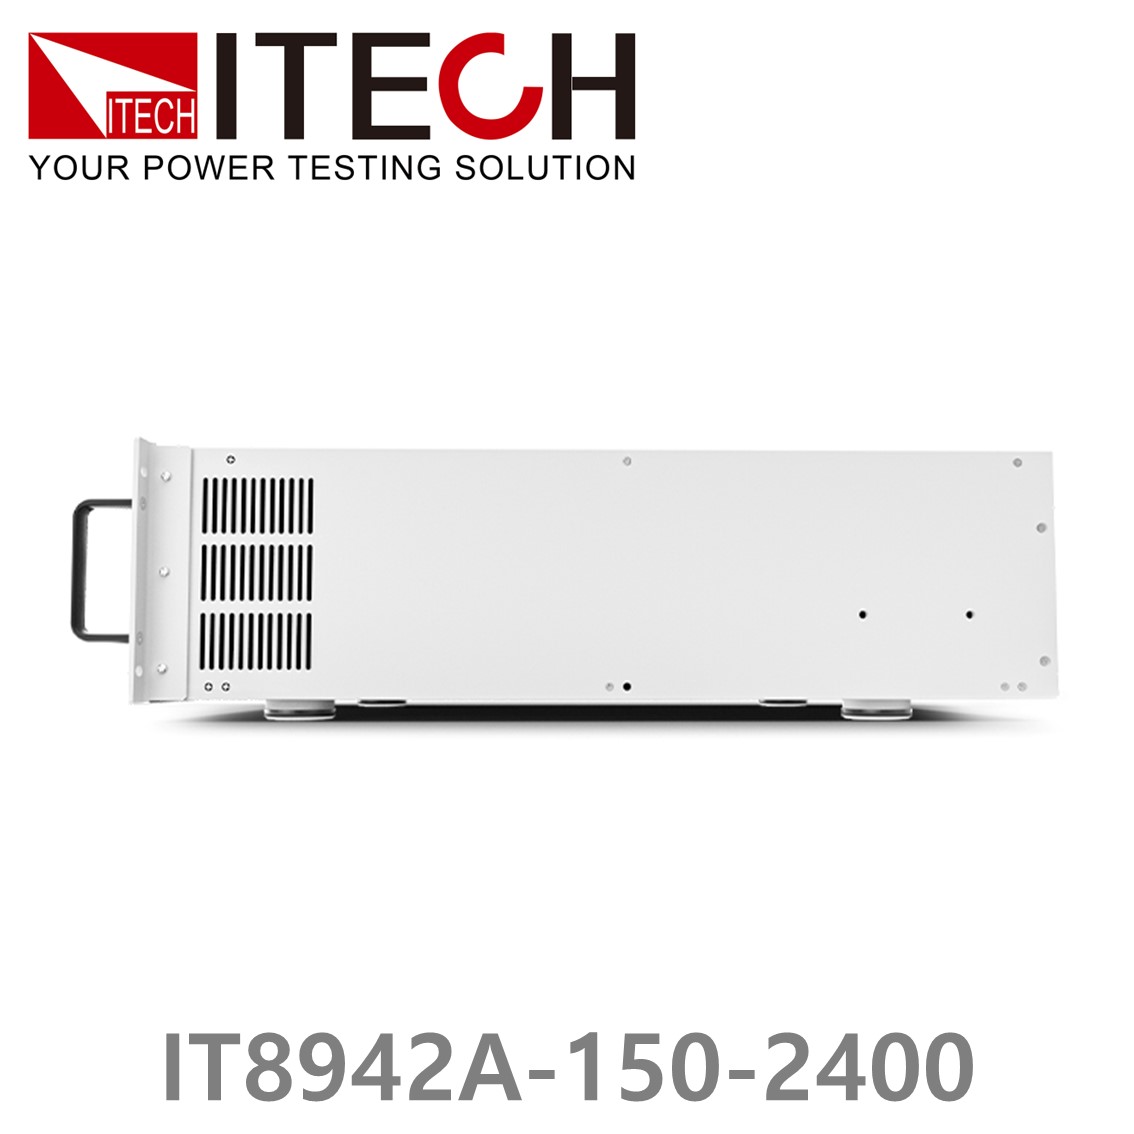 [ ITECH ] IT8942A-150-2400  고성능 고전력 DC 전자로드 150V/2400A/42kW (37U)